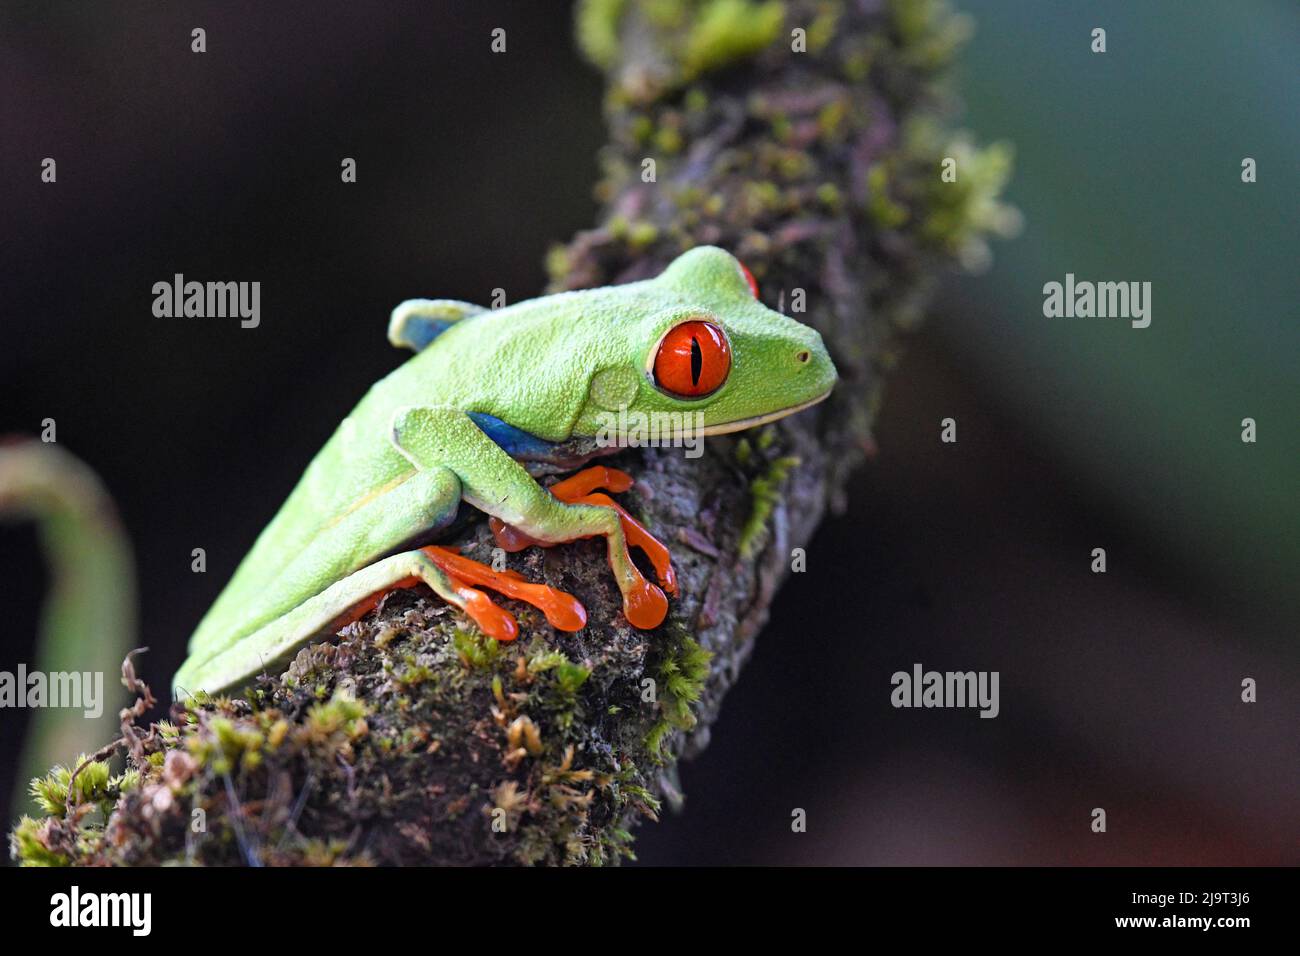 Rana verde de árbol, Costa Rica Foto de stock